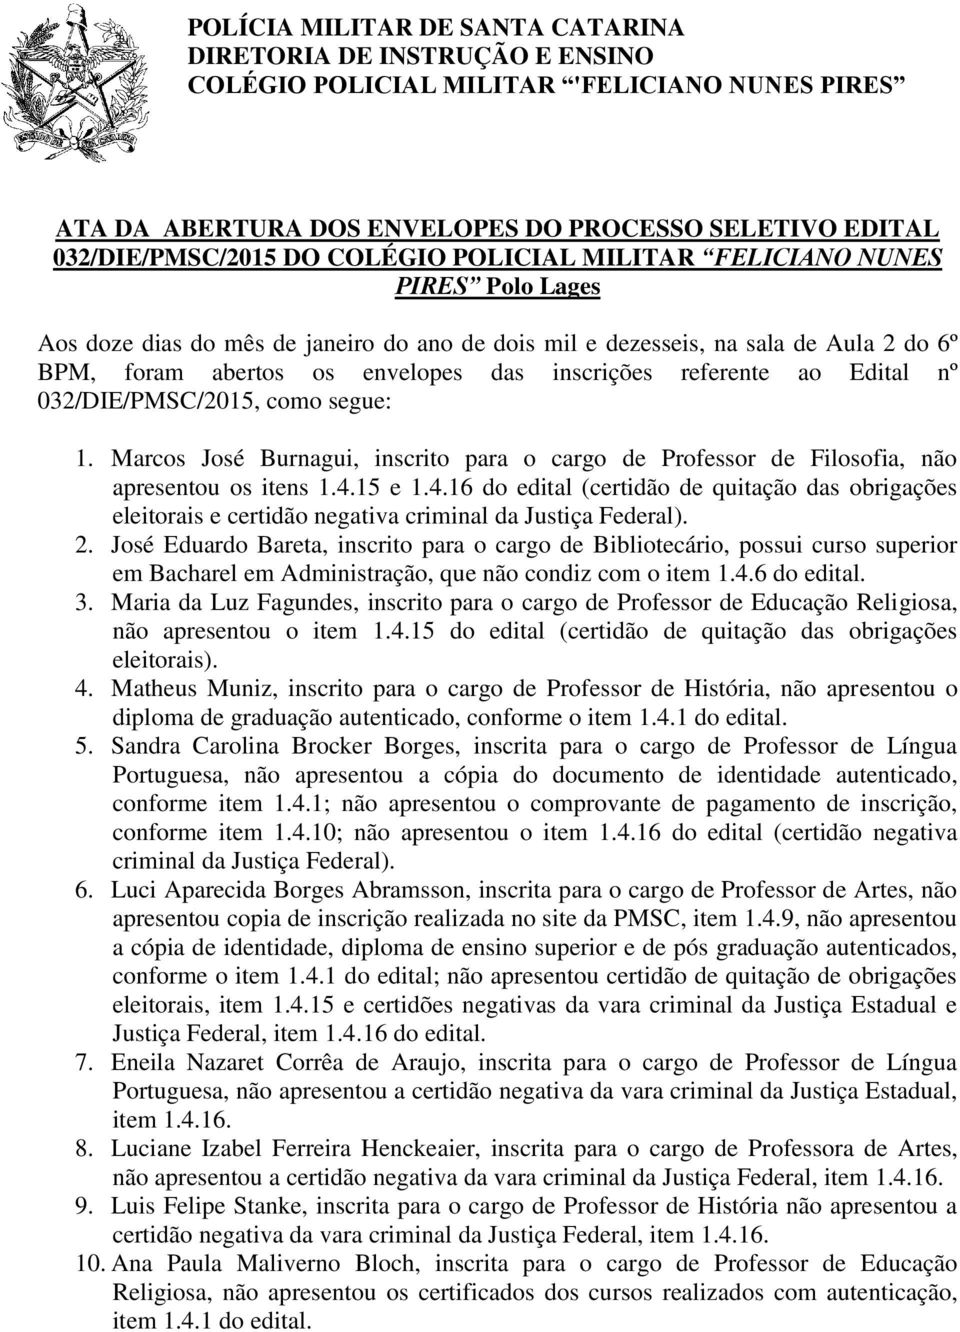 referente ao Edital nº 032/DIE/PMSC/2015, como segue: 1. Marcos José Burnagui, inscrito para o cargo de Professor de Filosofia, não apresentou os itens 1.4.